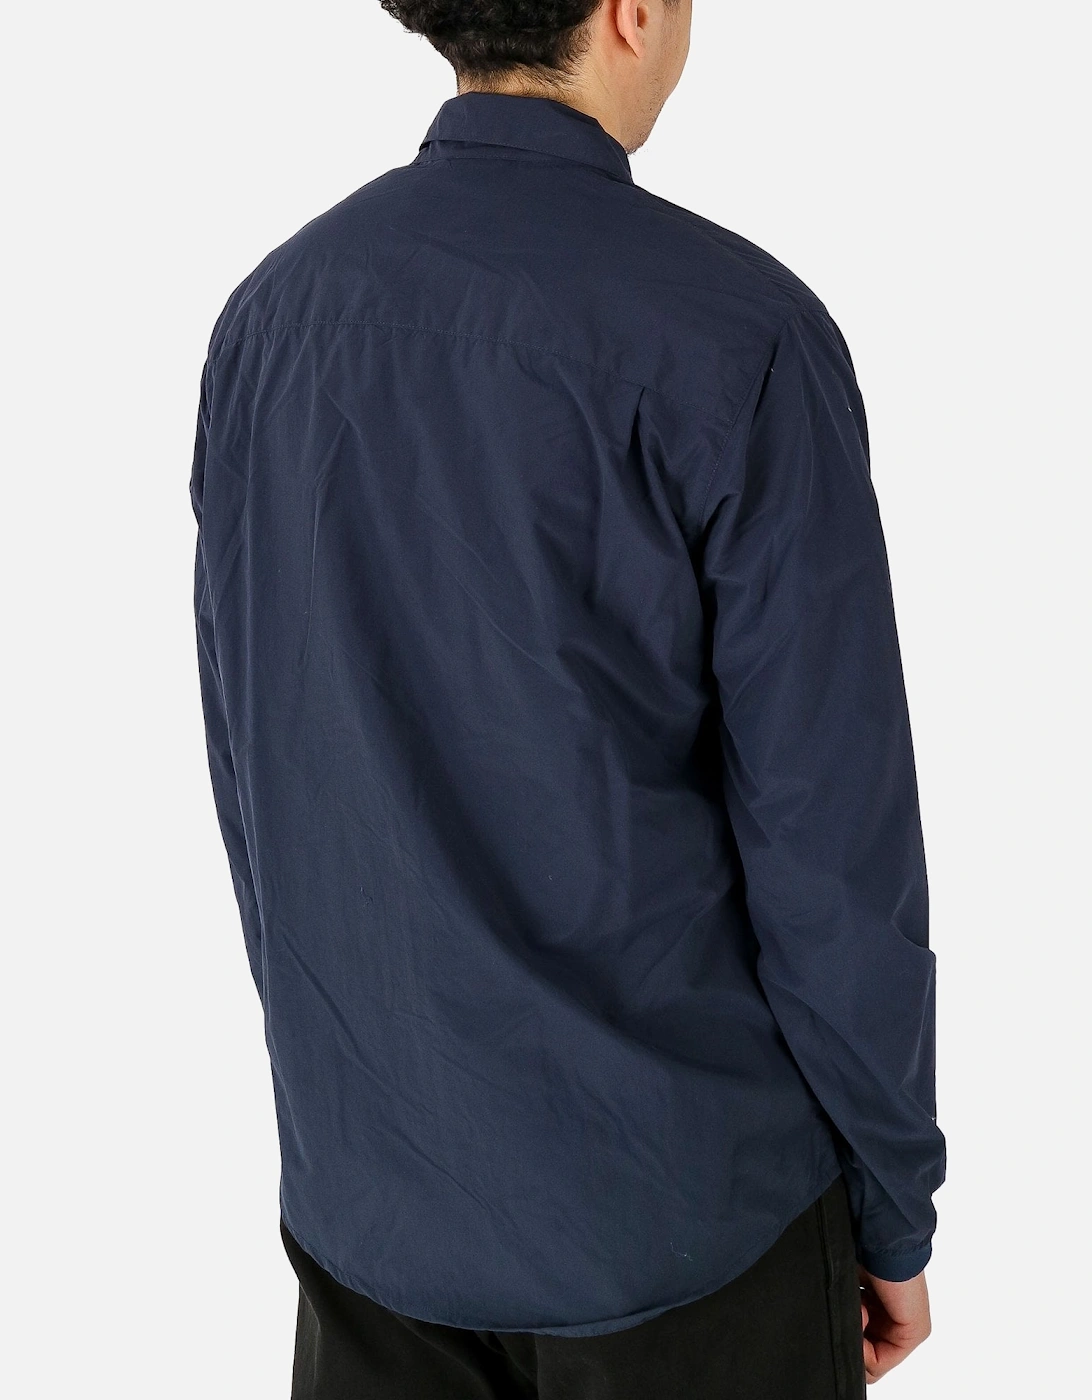 Tonaro Zip Navy Overshirt Jacket